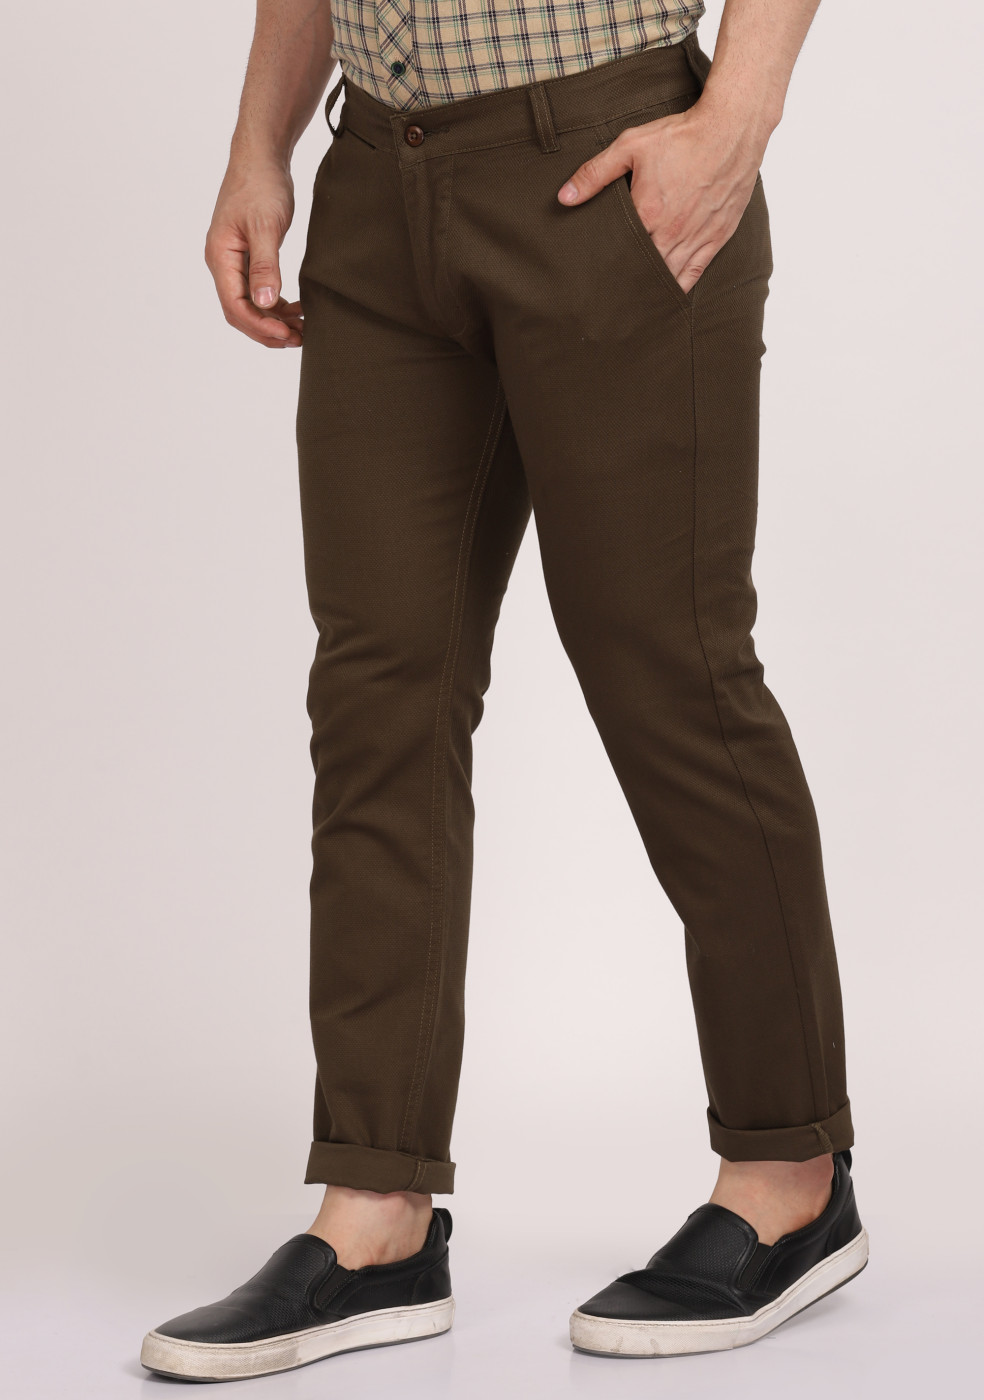 ASHTOM Casual Cotton Trouser Regular Fit For Men